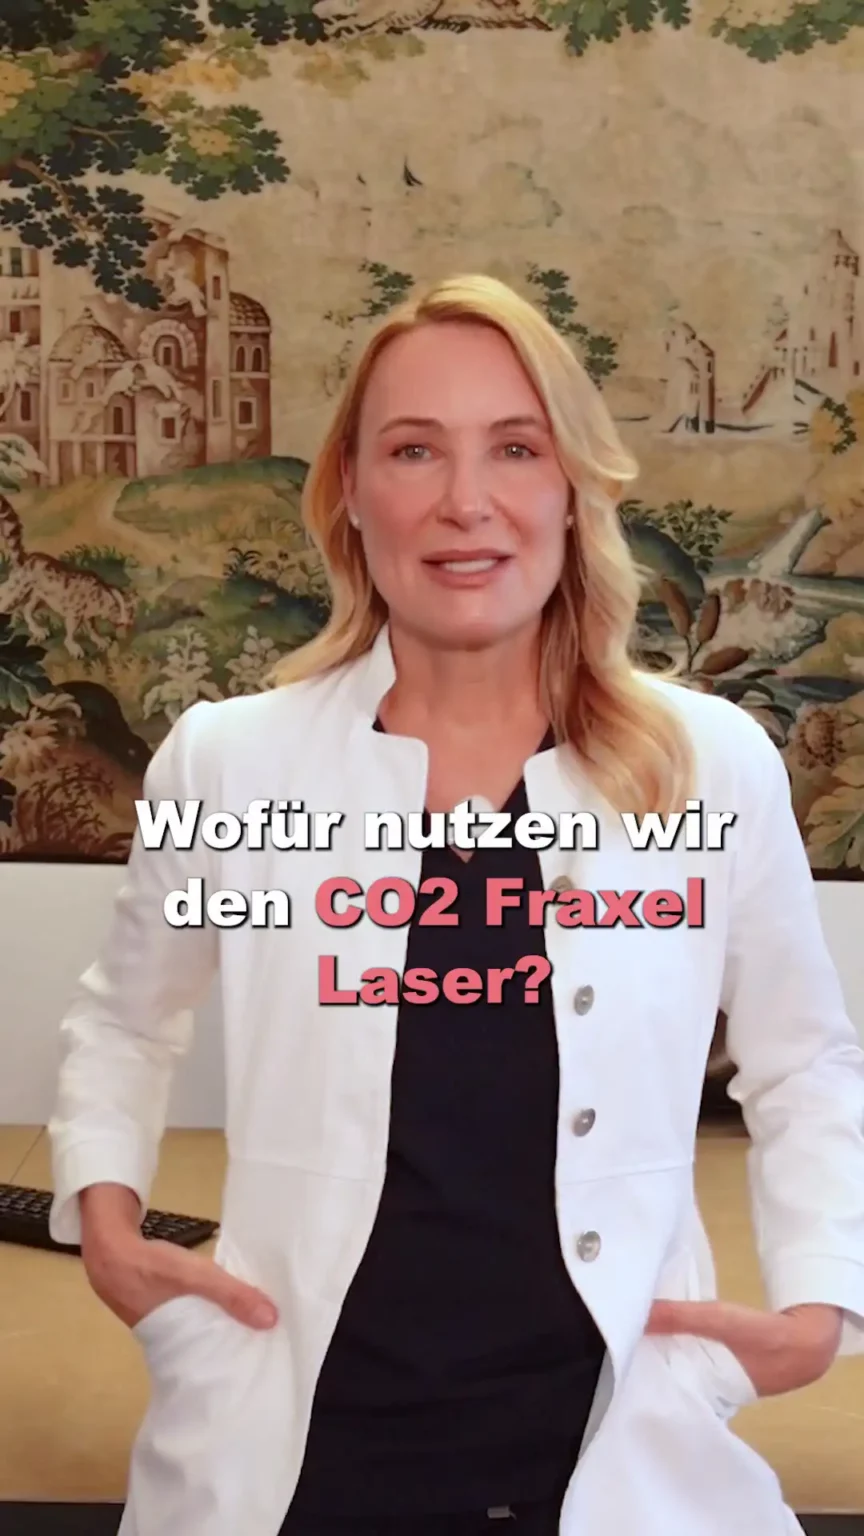 Aufnahme von Dr. Berkei mit dem Text "Wofür nutzen wir den CO2 Fraxel Laser?".